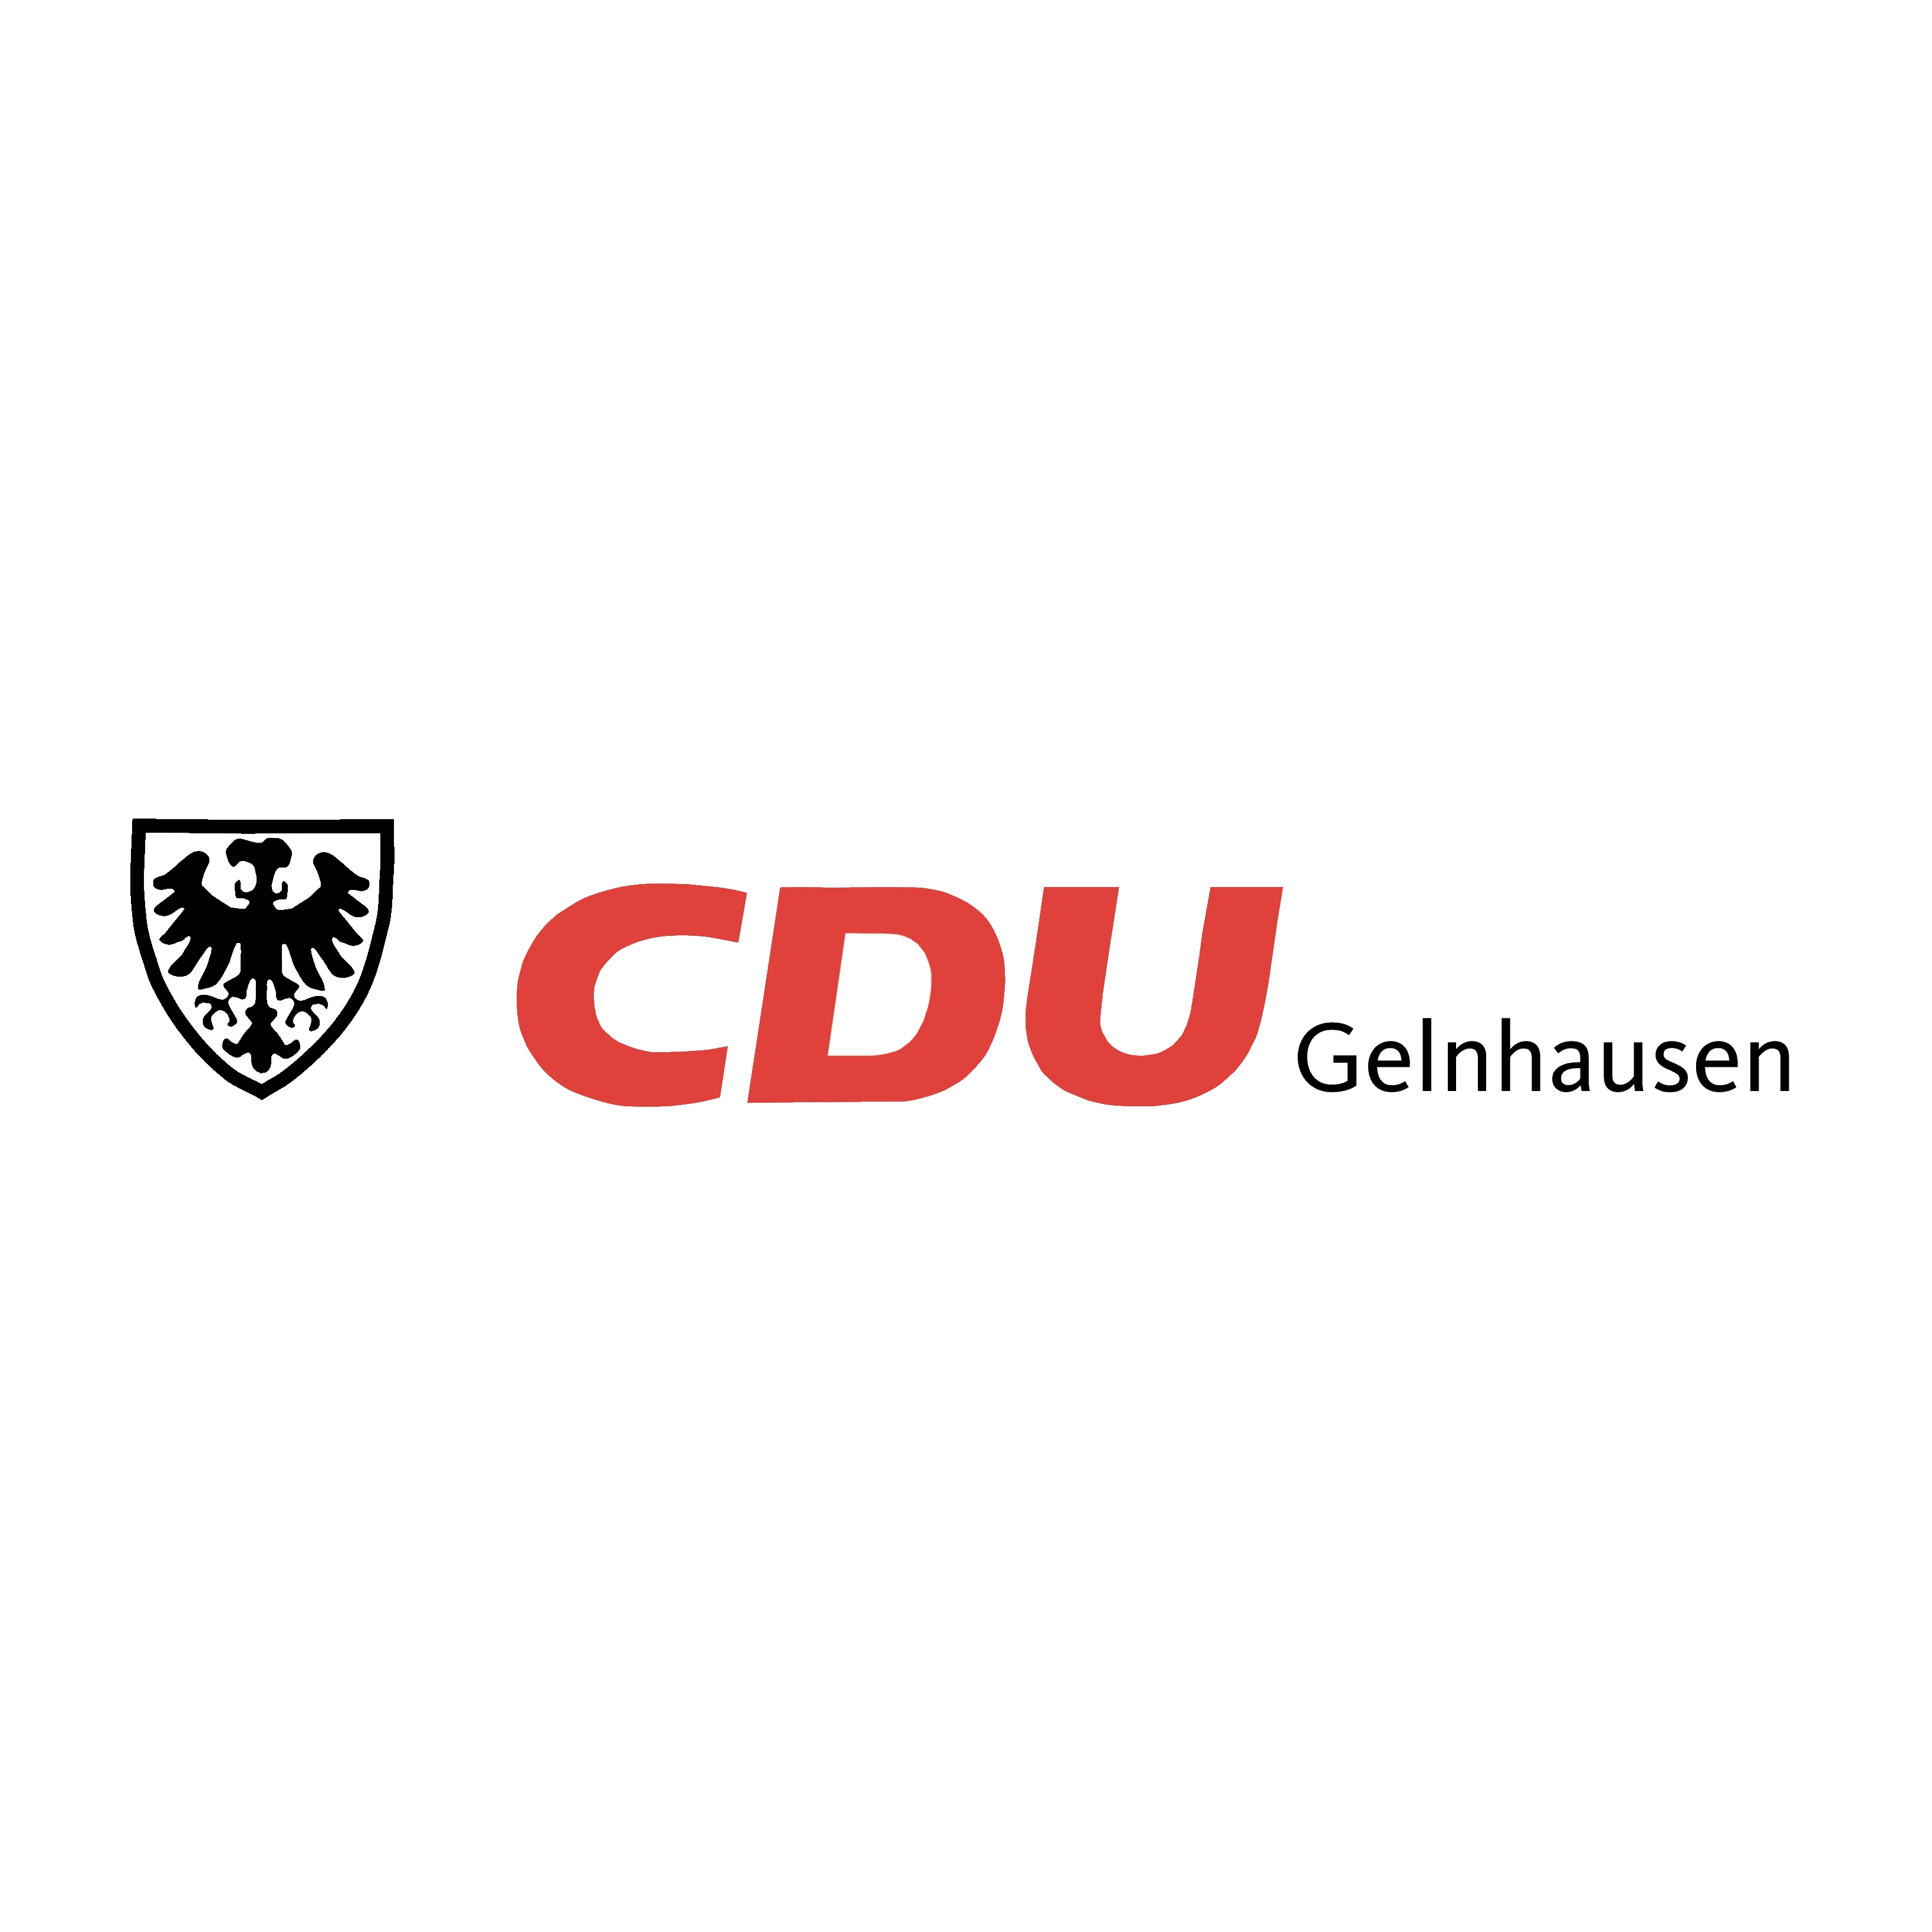 CDU Gelnhausen